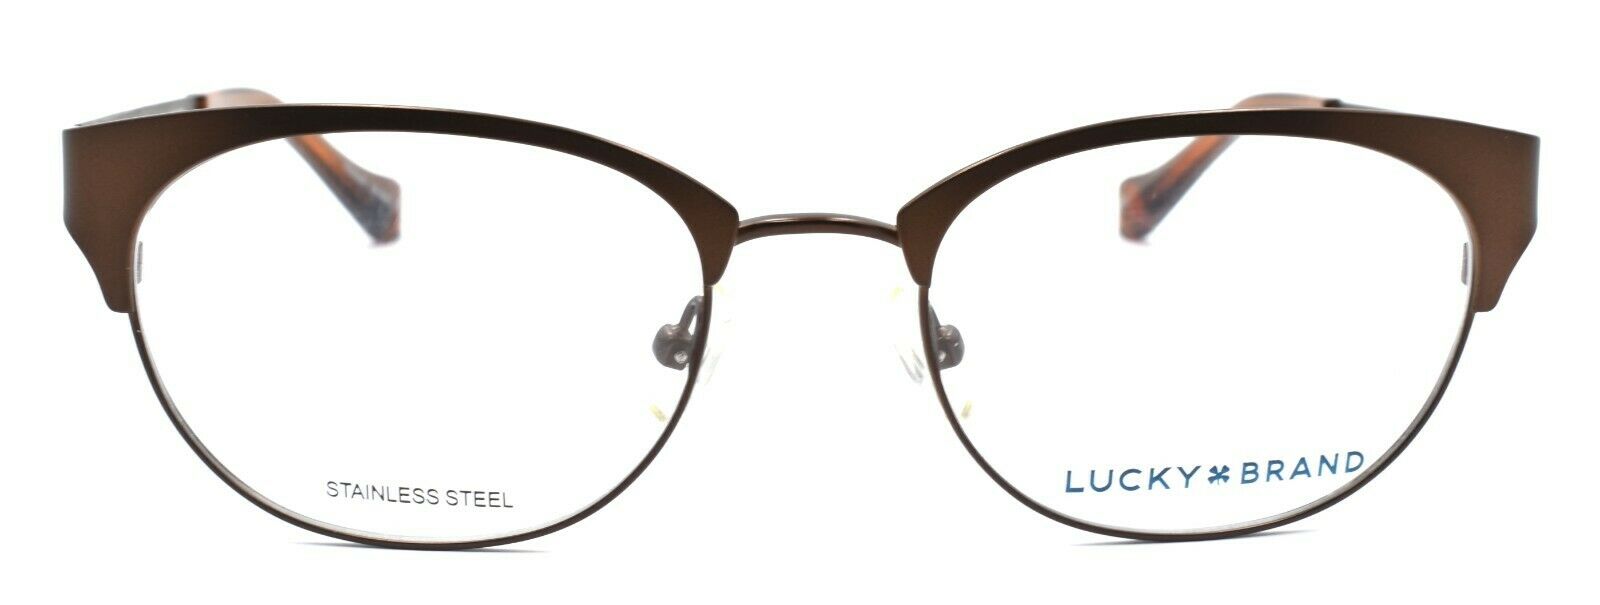 2-LUCKY BRAND D103 Women's Eyeglasses Frames 50-18-135 Brown + CASE-751286281712-IKSpecs